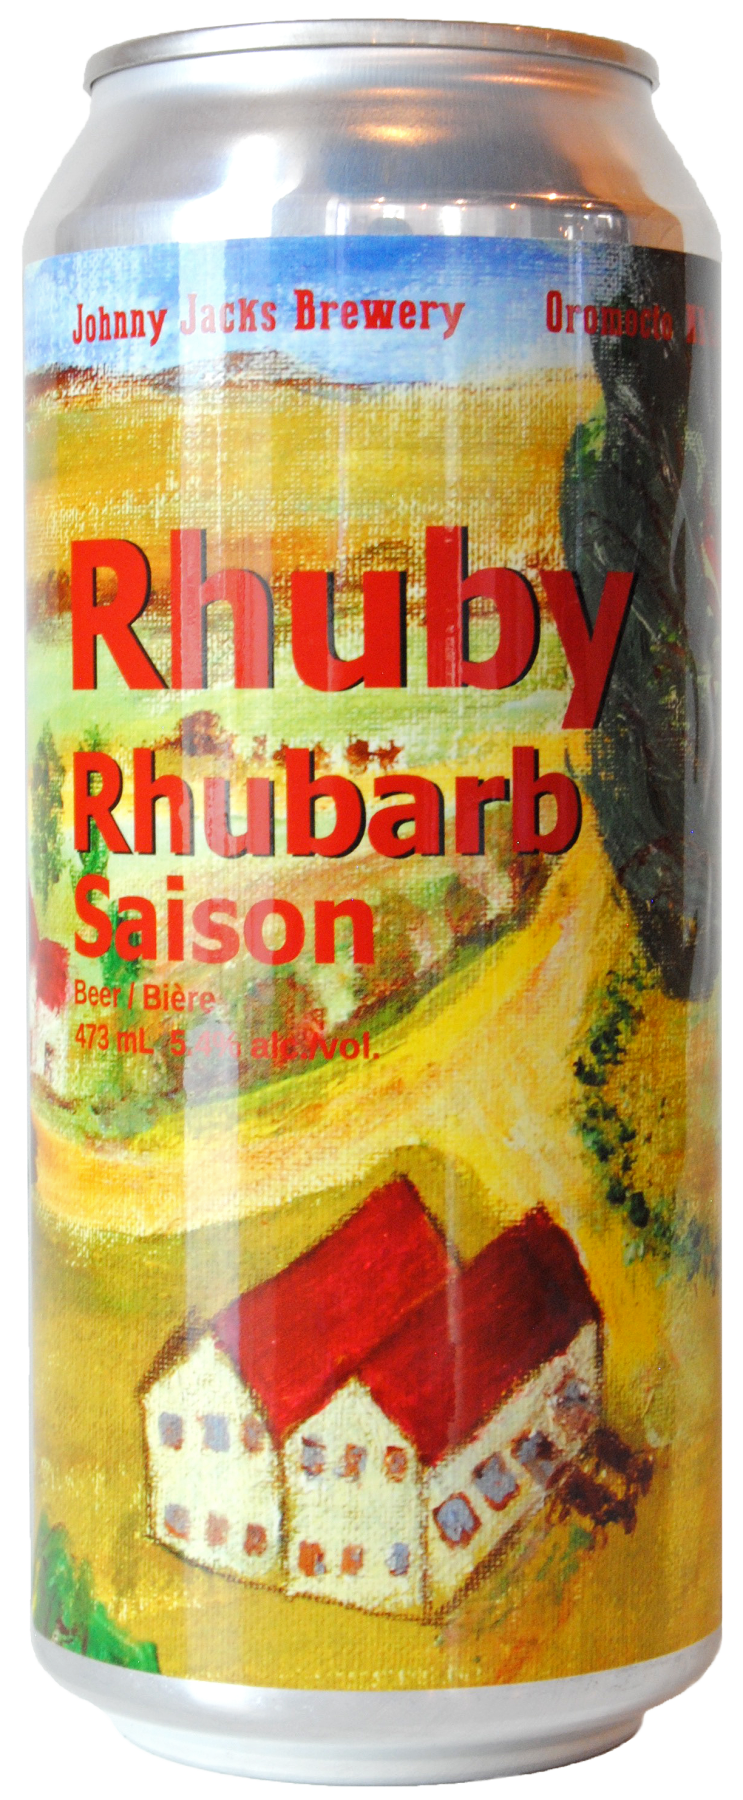 Rhuby Rhubarb Saison